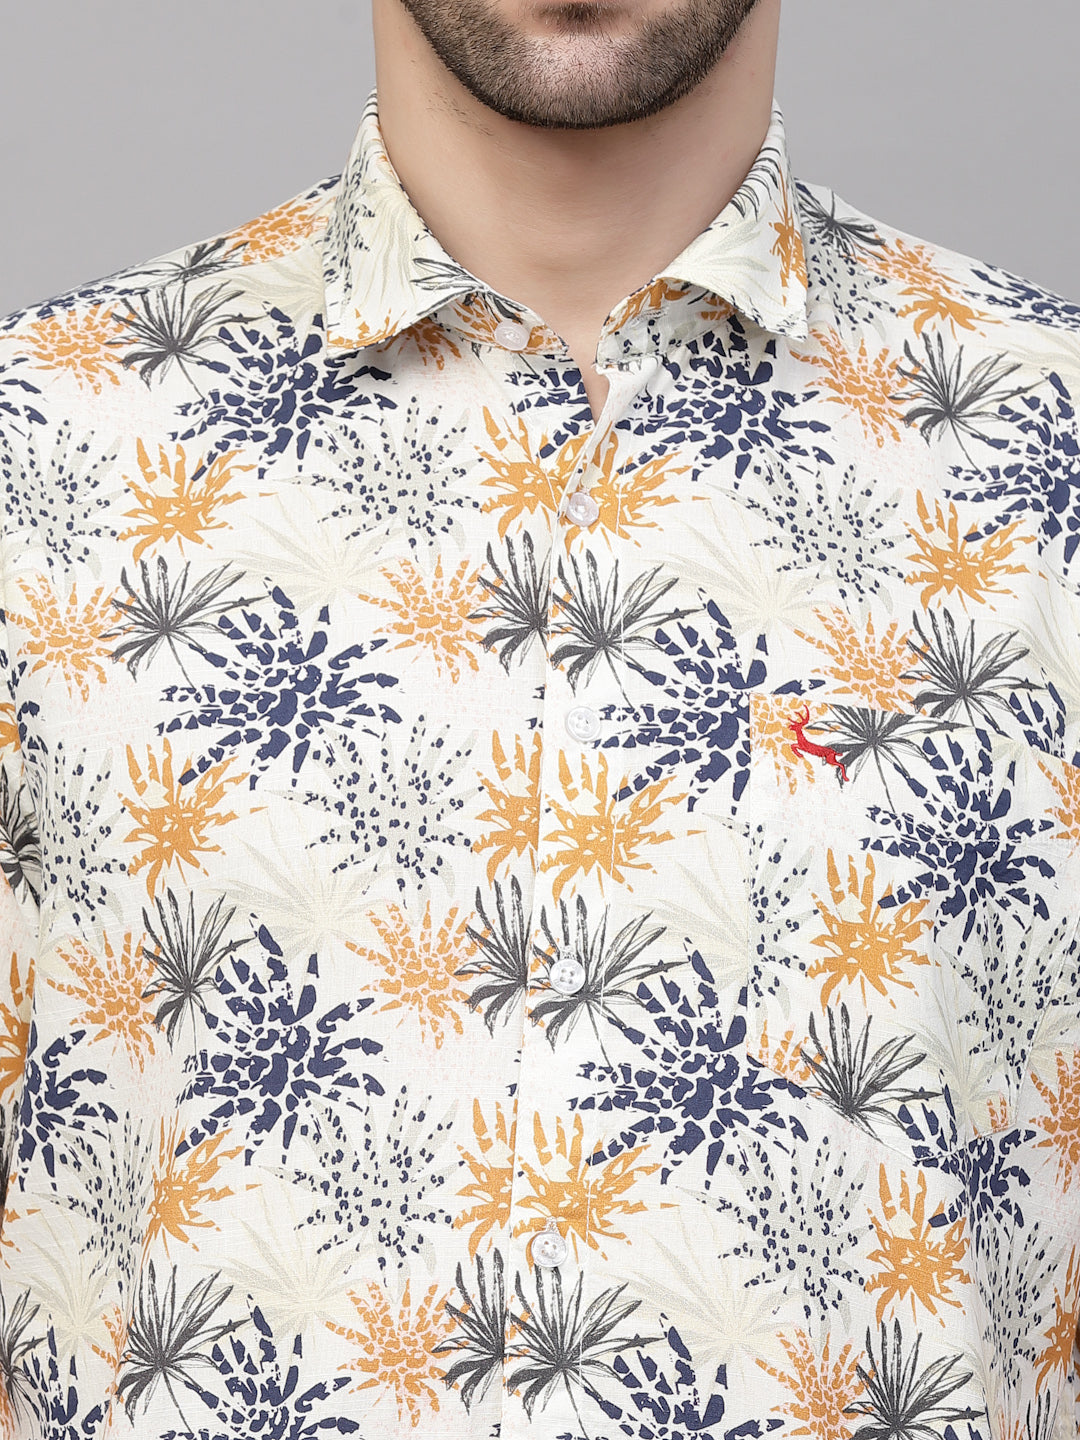 Valbone Men’s Beige Color Digital Floral Printed Regular Fit Casual Shirt Half Sleeves